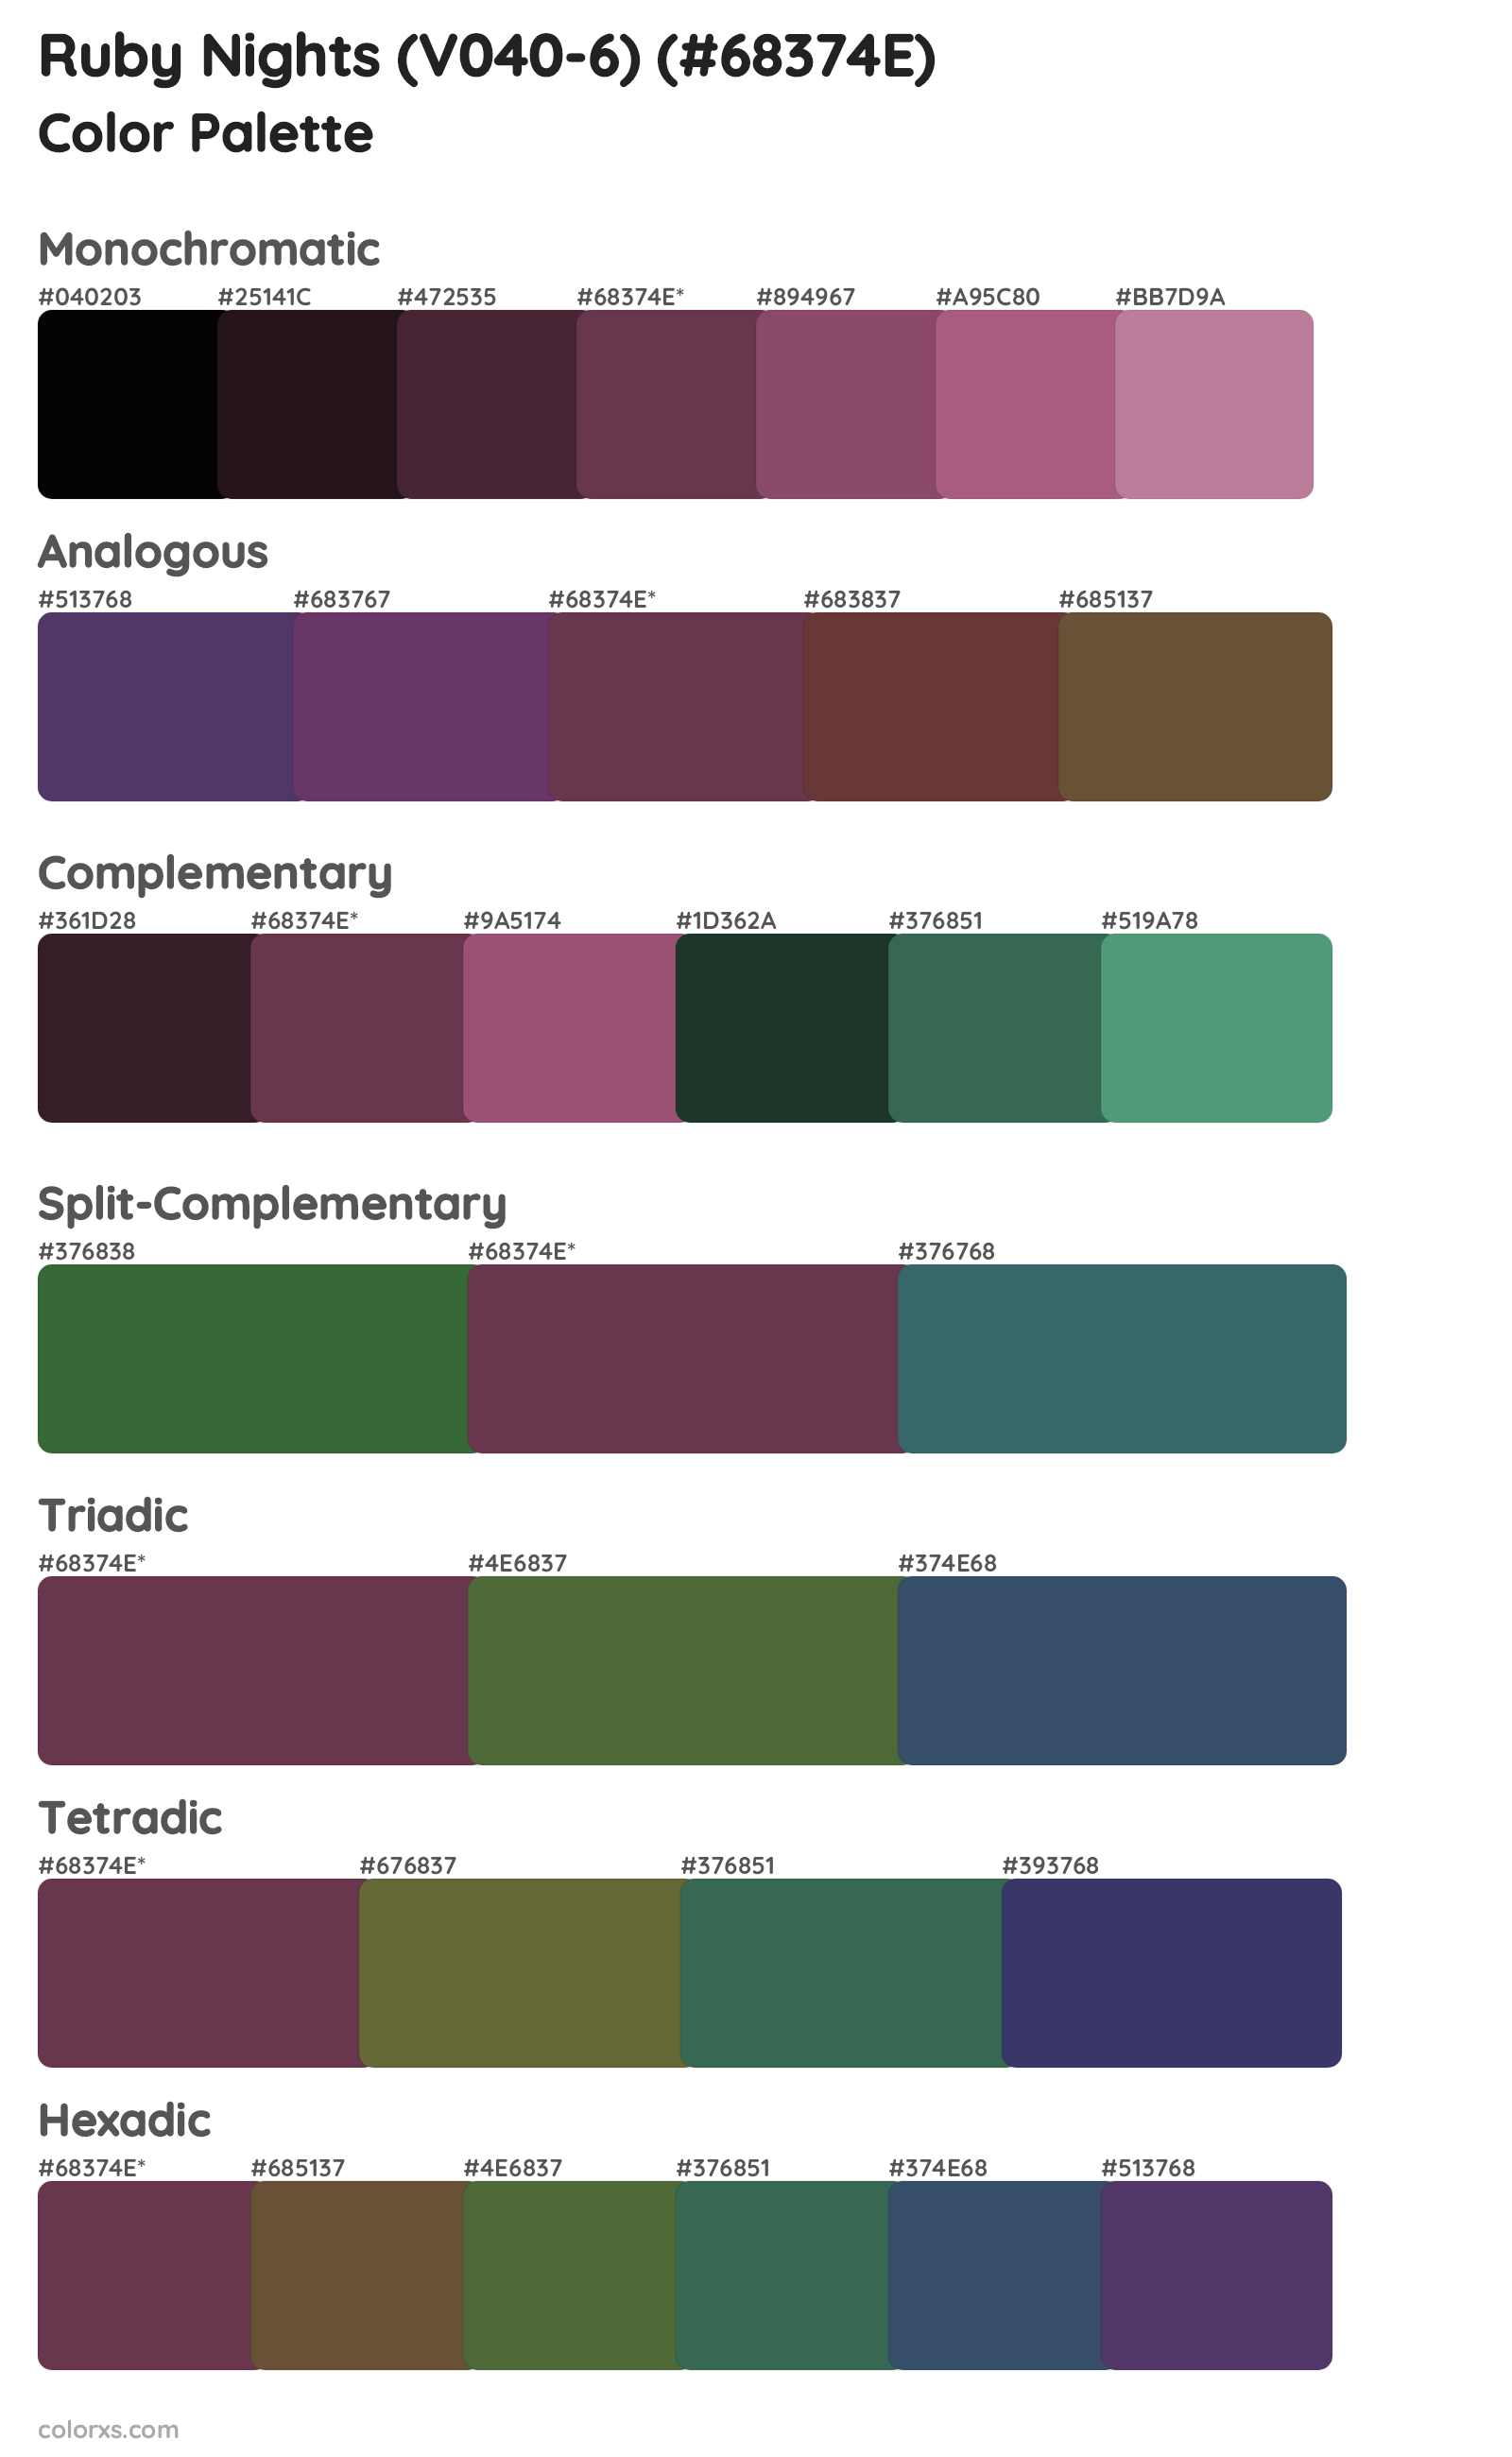 Ruby Nights (V040-6) Color Scheme Palettes